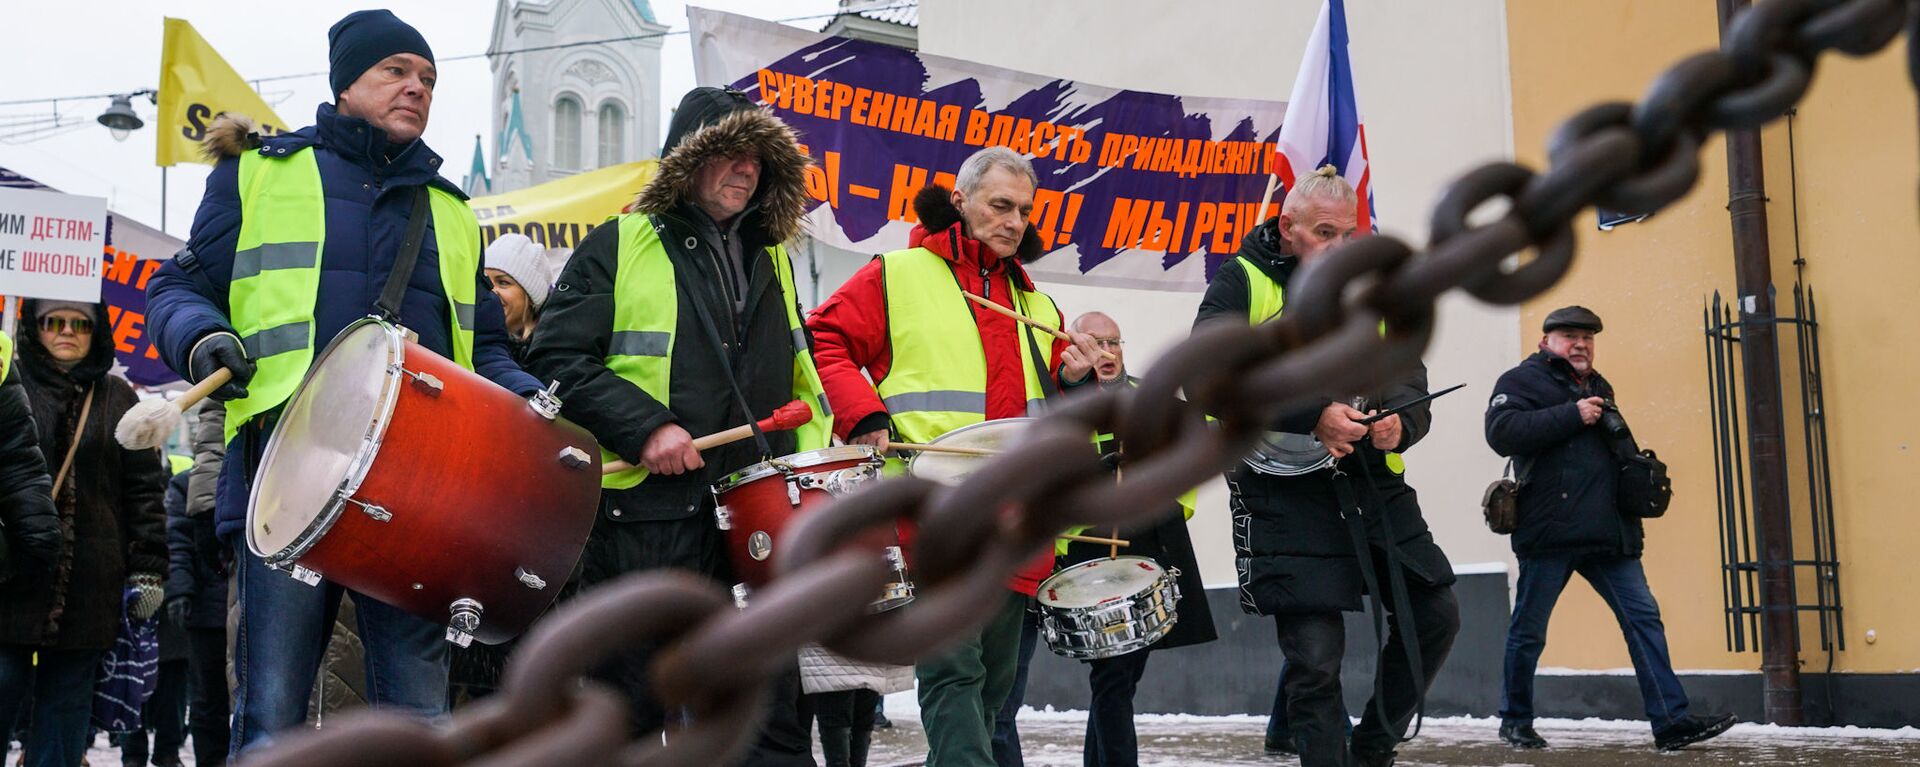 Акция протеста в Риге против социального и национального неравенства в Латвии. 12 января 2019 г. - Sputnik Латвия, 1920, 12.01.2019